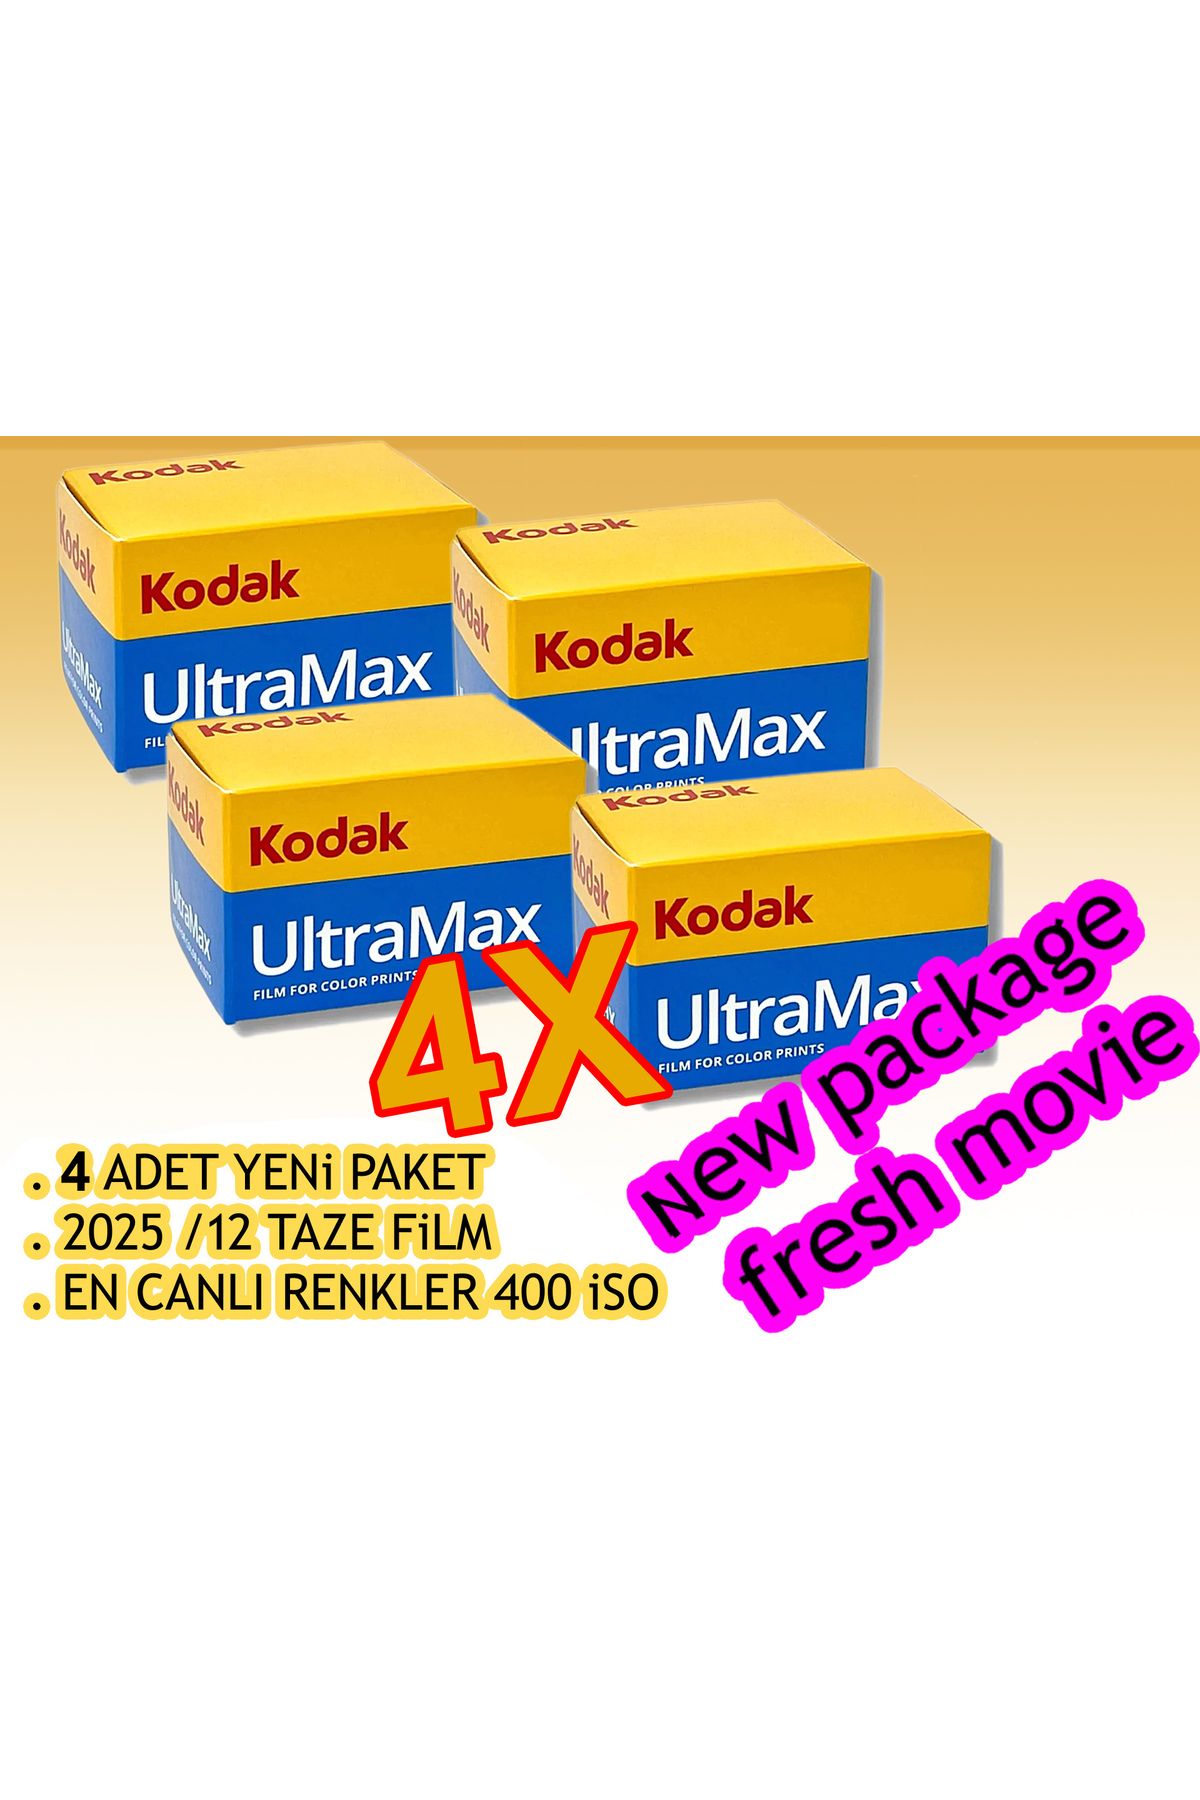 Kodak Ultramax 24 Fılm